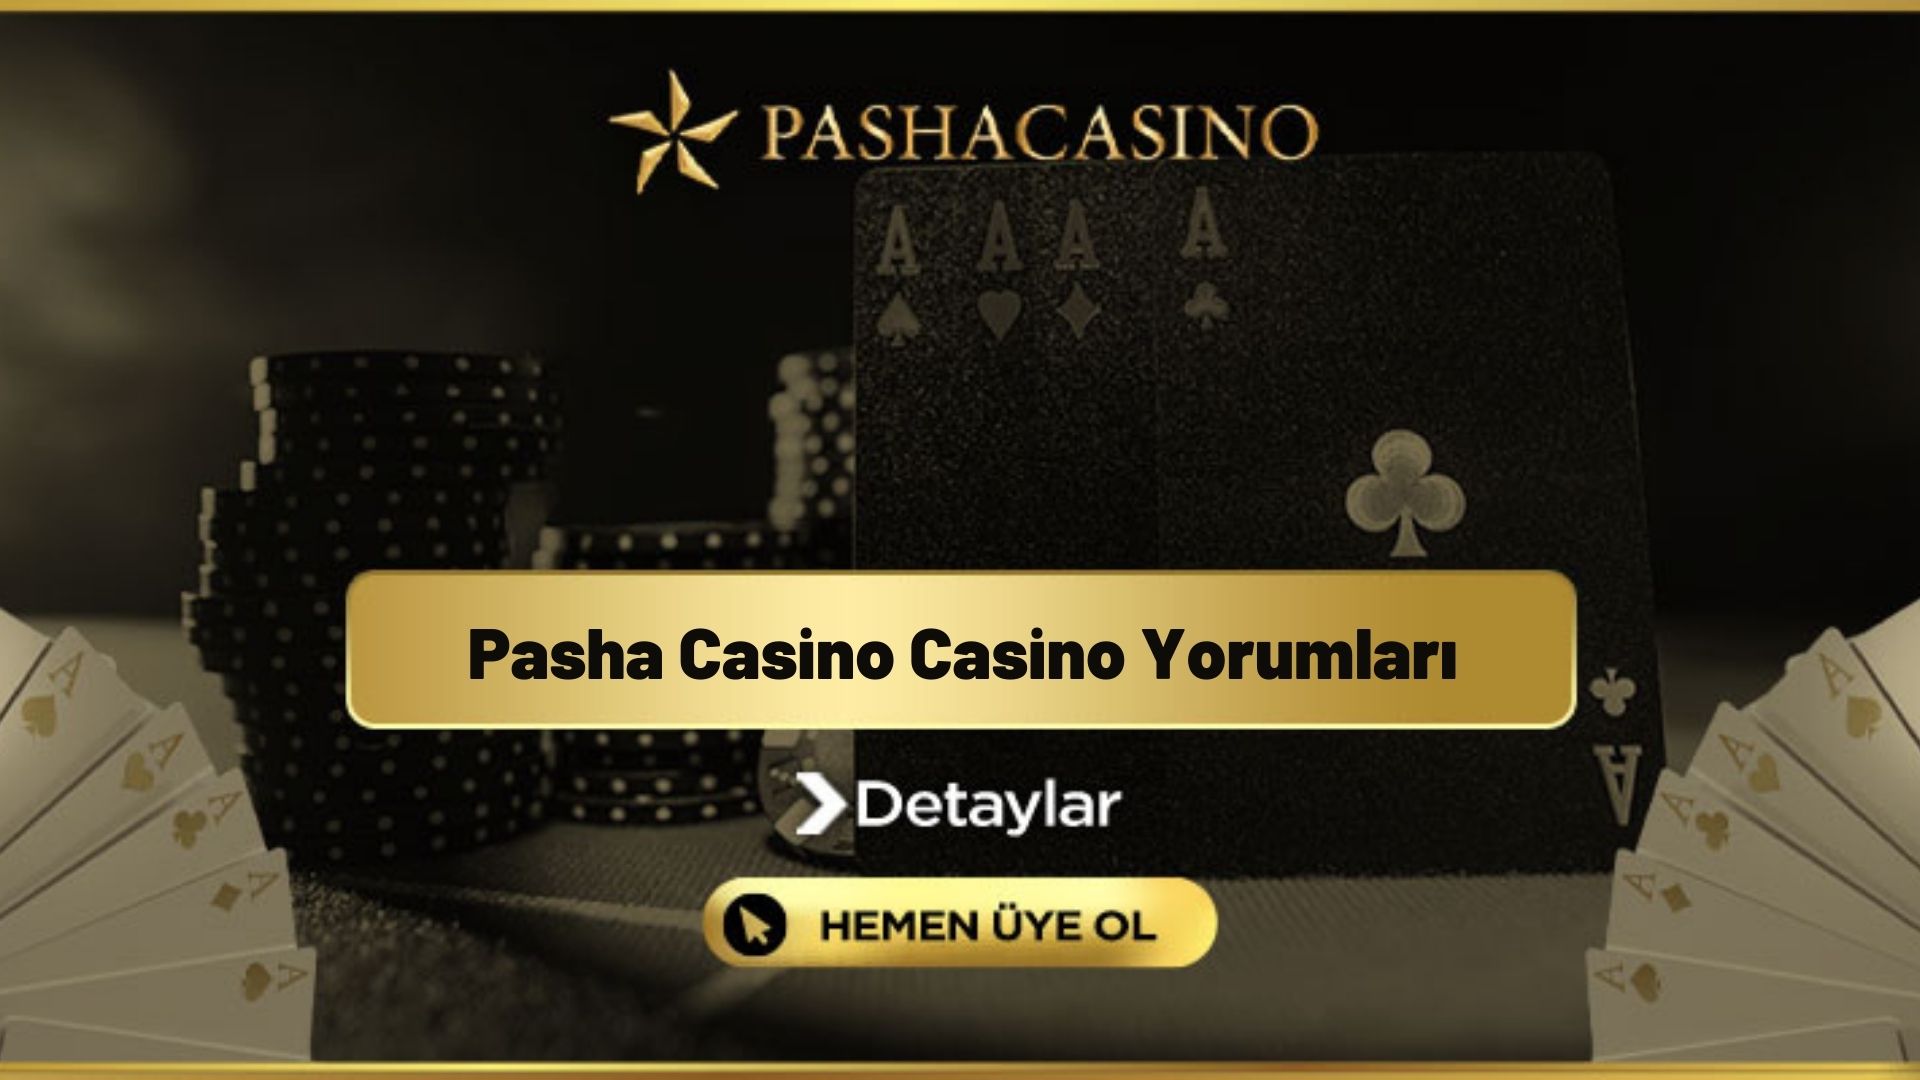 Pasha Casino Casino Yorumları